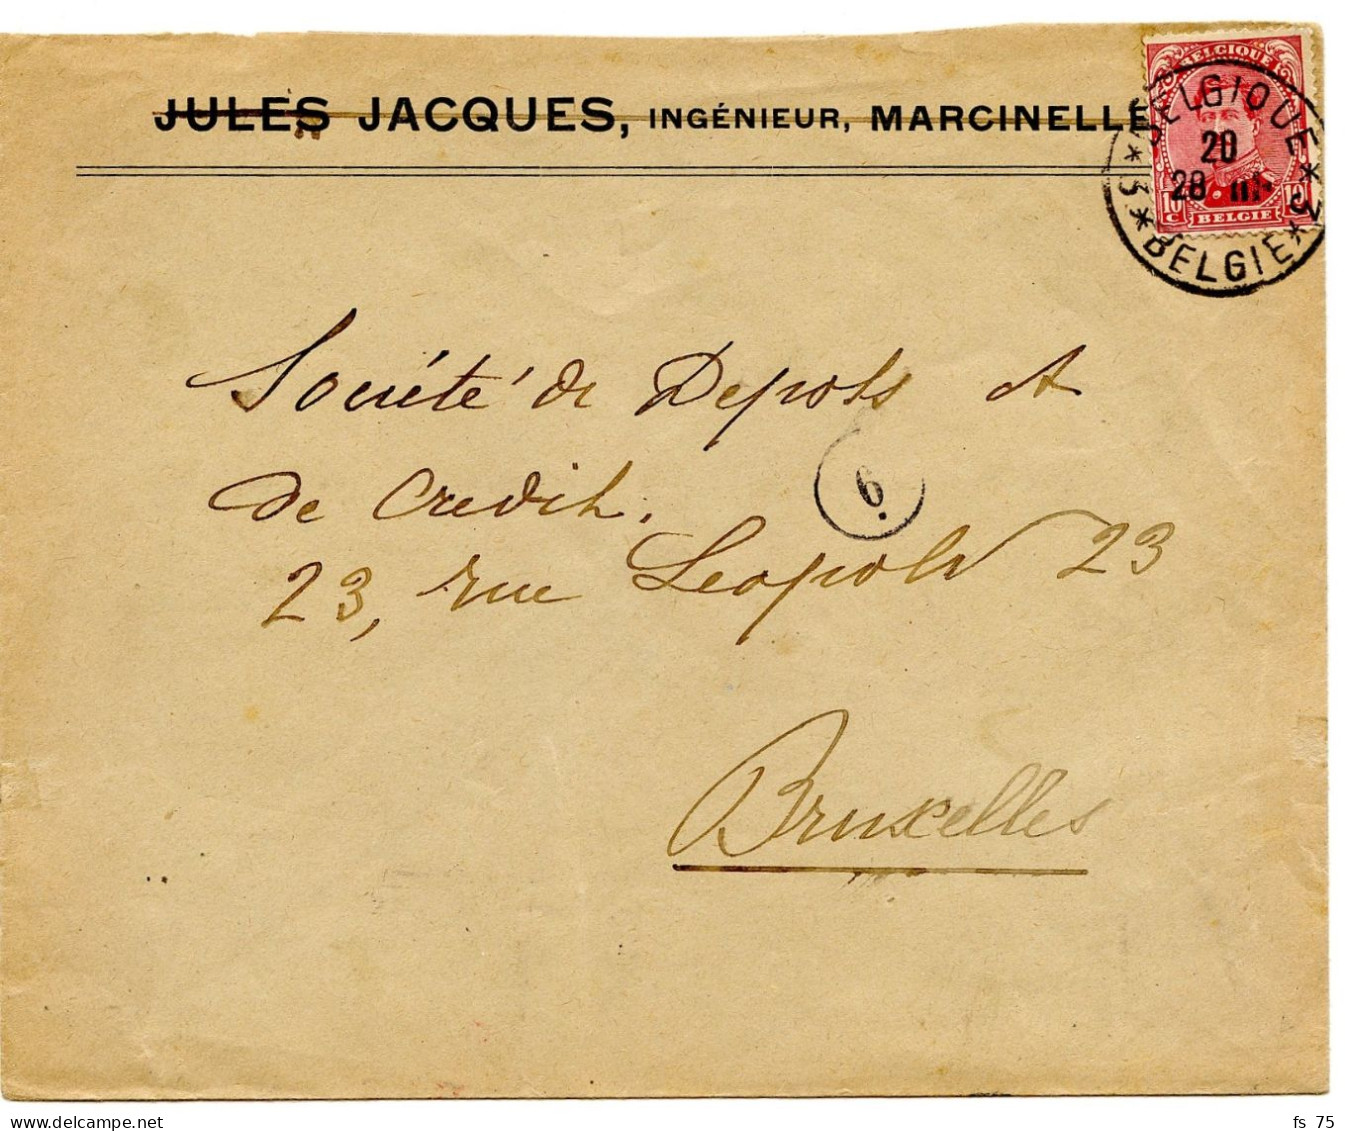 BELGIQUE - COB 138 SIMPLE CERCLE BILINGUE 3 * BELGIQUE * 3  SUR LETTRE DE MARCINELLE, 1919 - Lettres & Documents